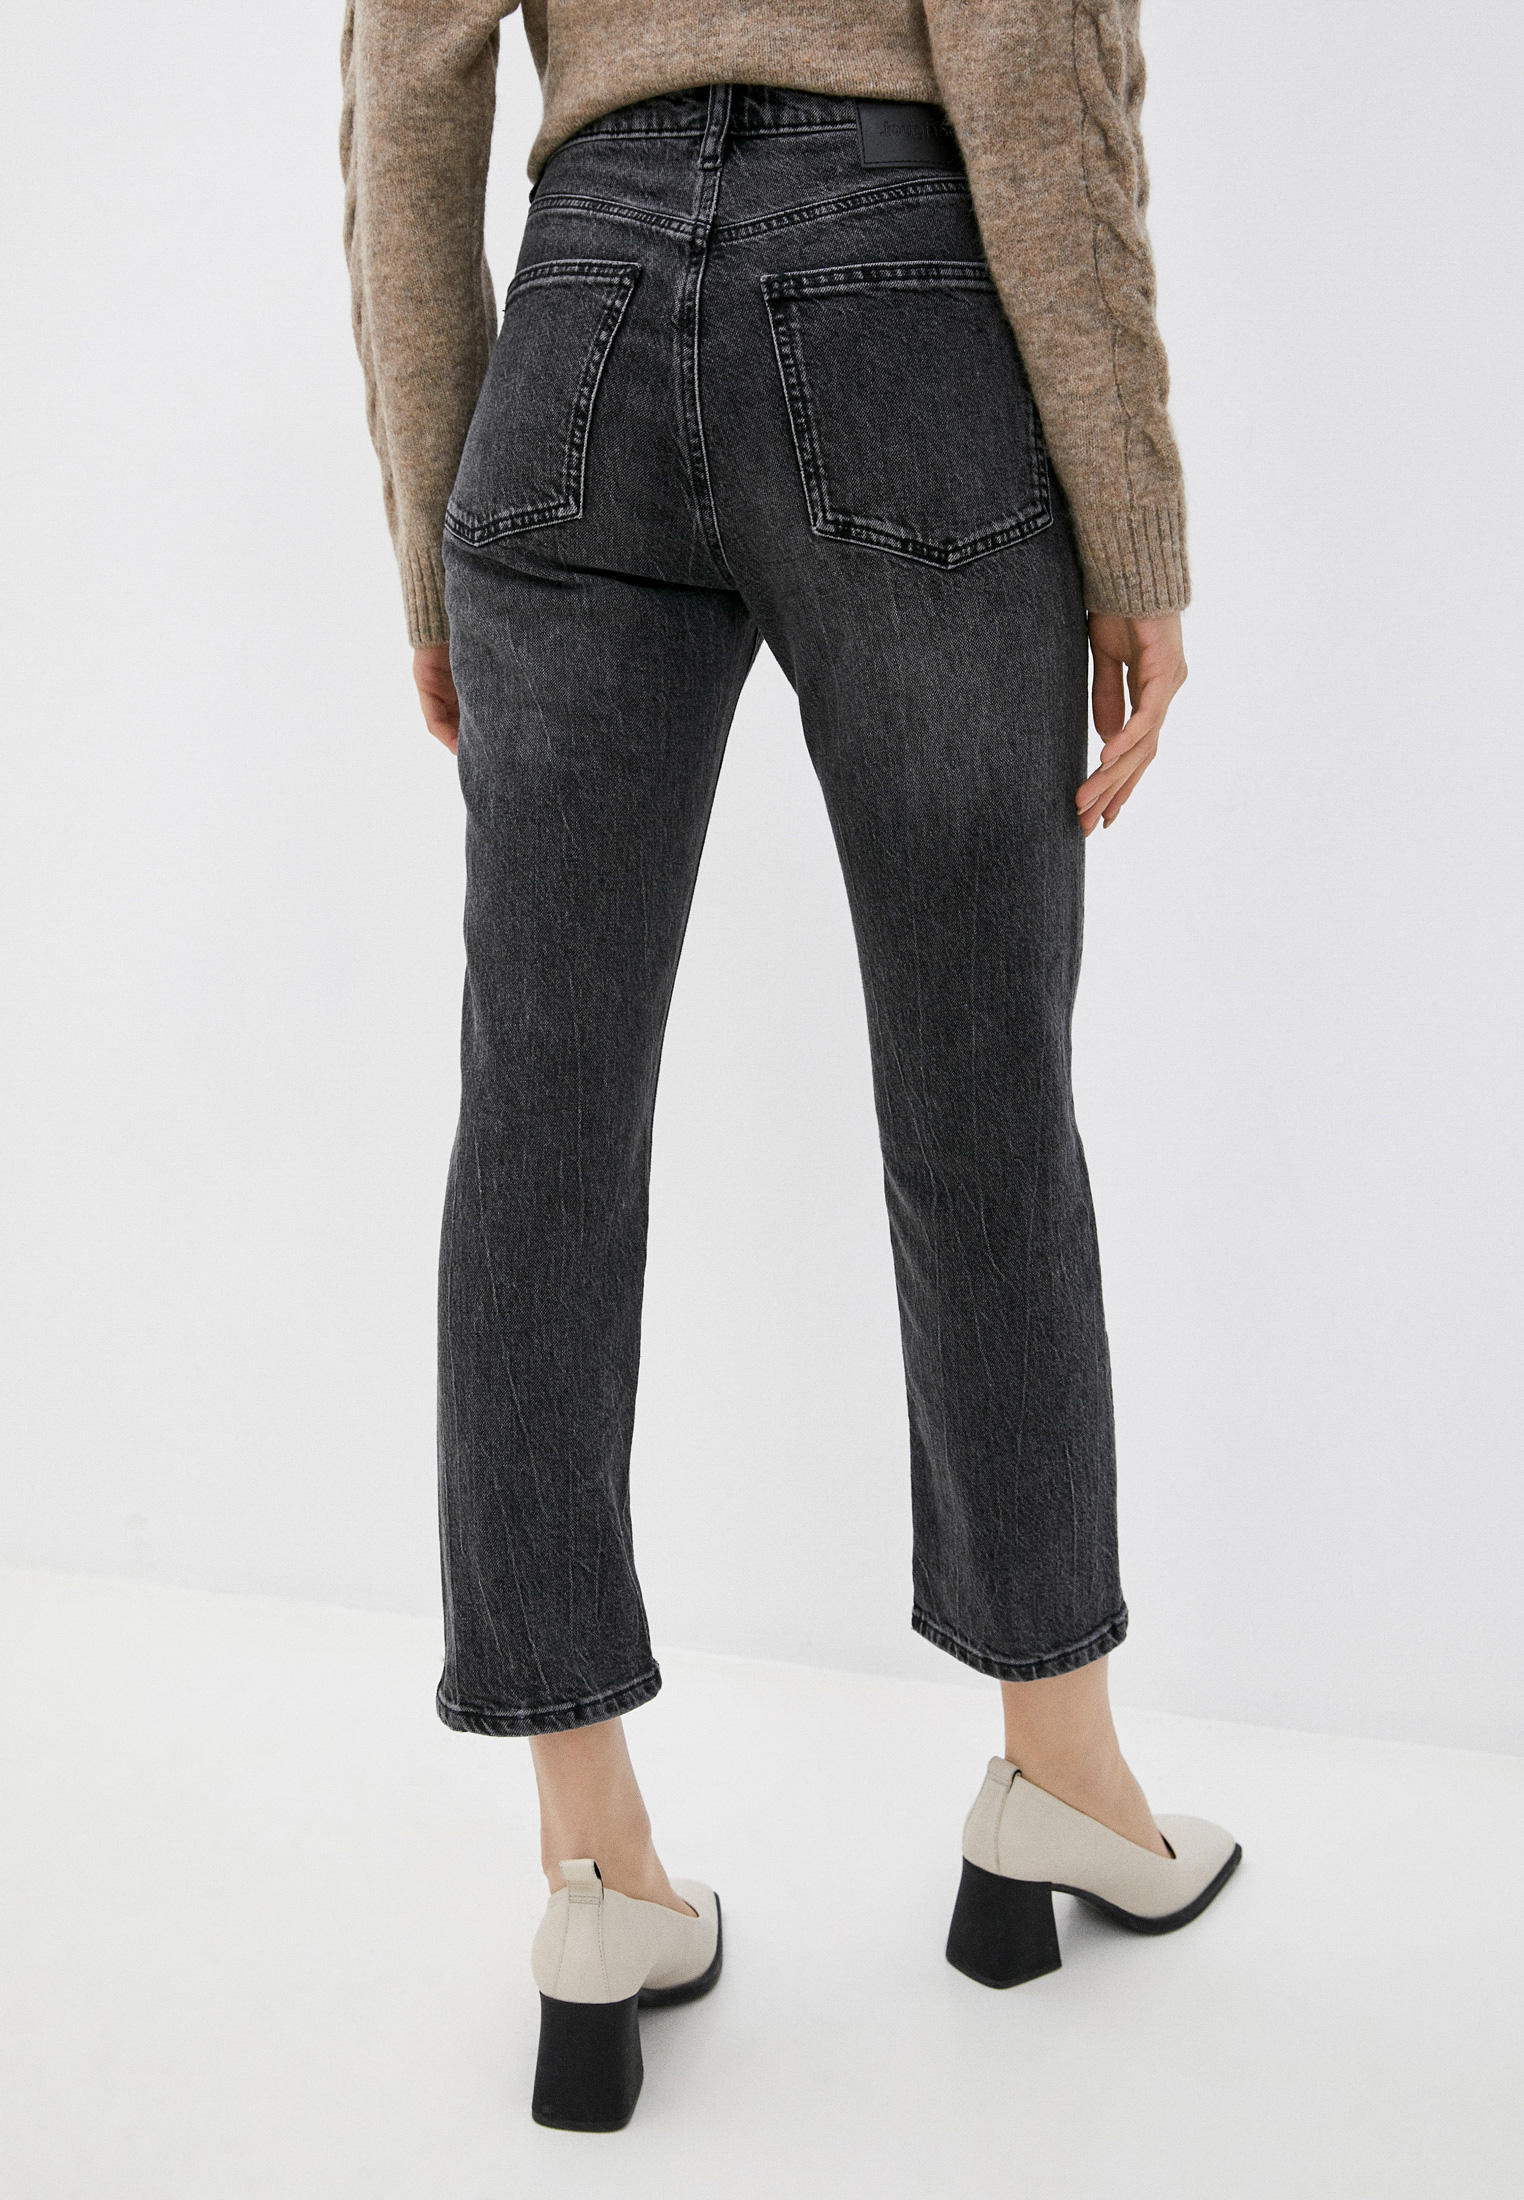 Прямые джинсы женские Desigual (Дезигуаль) 21WWDD05 купить за 6360 руб.